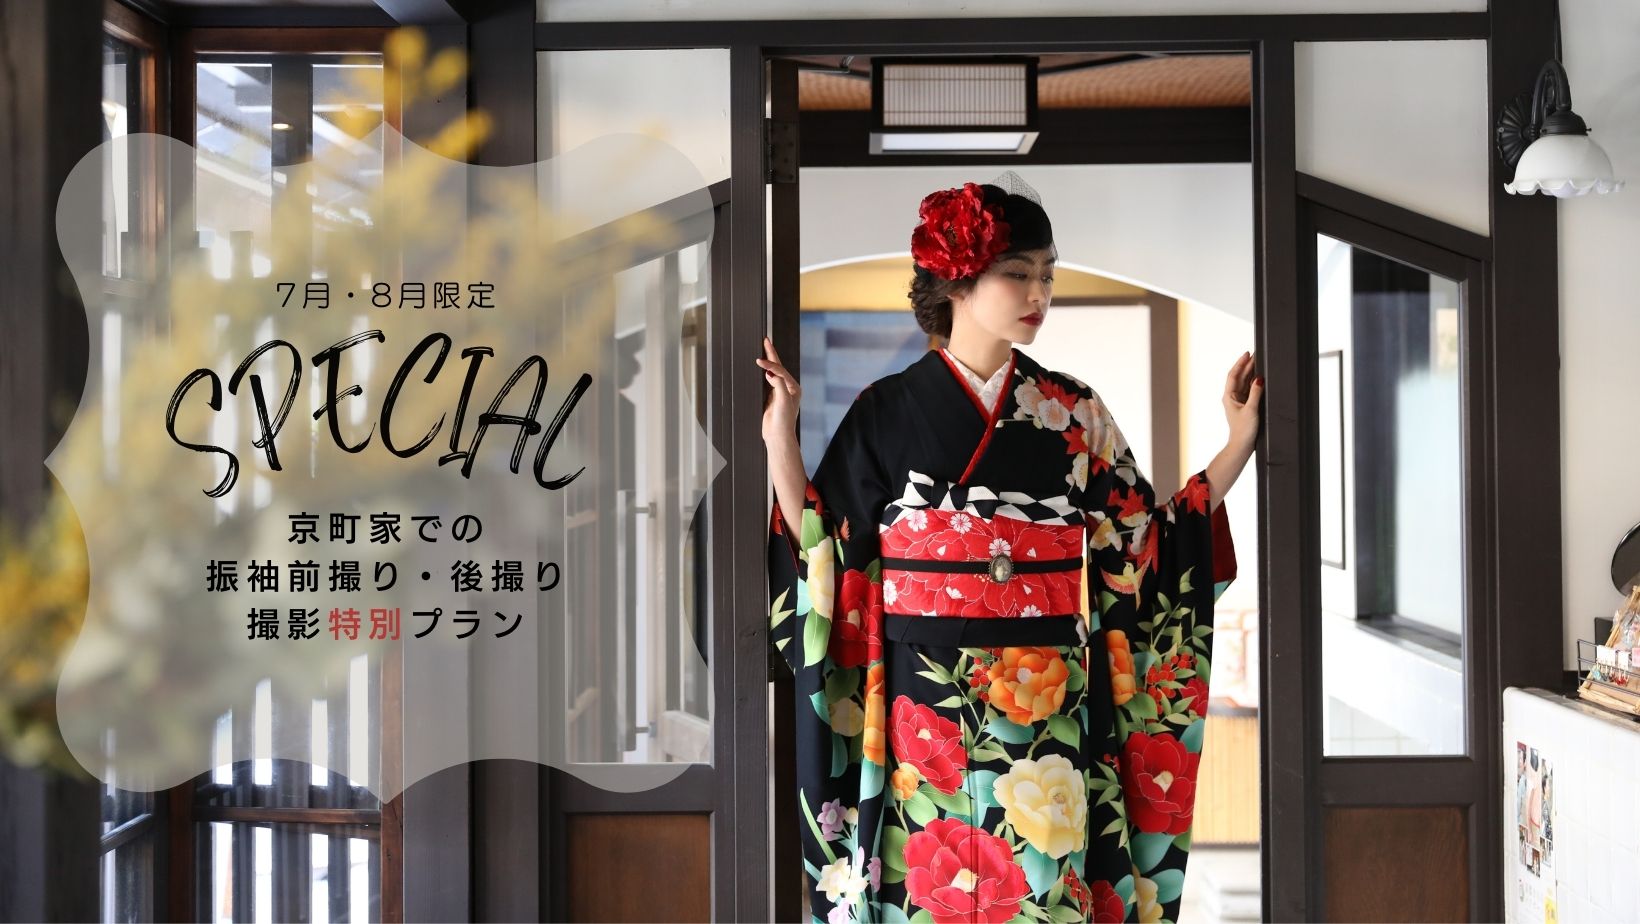 7月 8月限定 京町家での23年 24年成人式向け振袖前撮り特別プランリリース ファッショントレンド